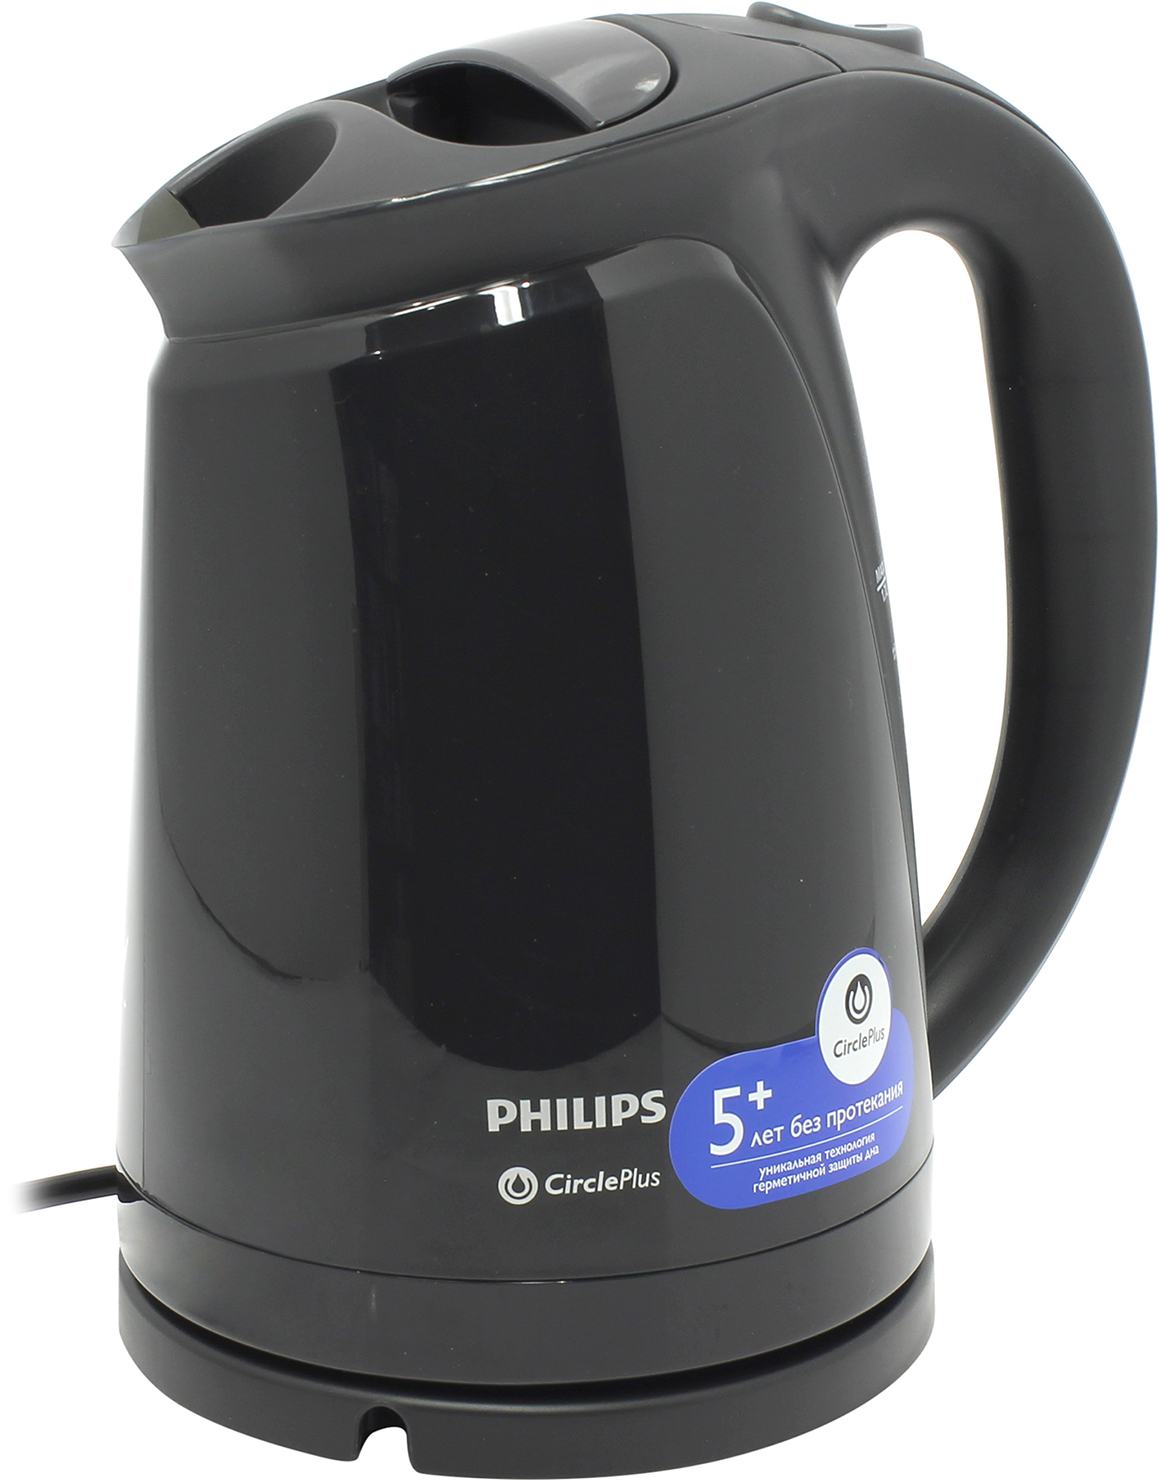 Филипс краснодар. Philips hd4699. Чайник Филипс hd4699. Philips hd4699/20. Philips чайник электрический 1,7 л.